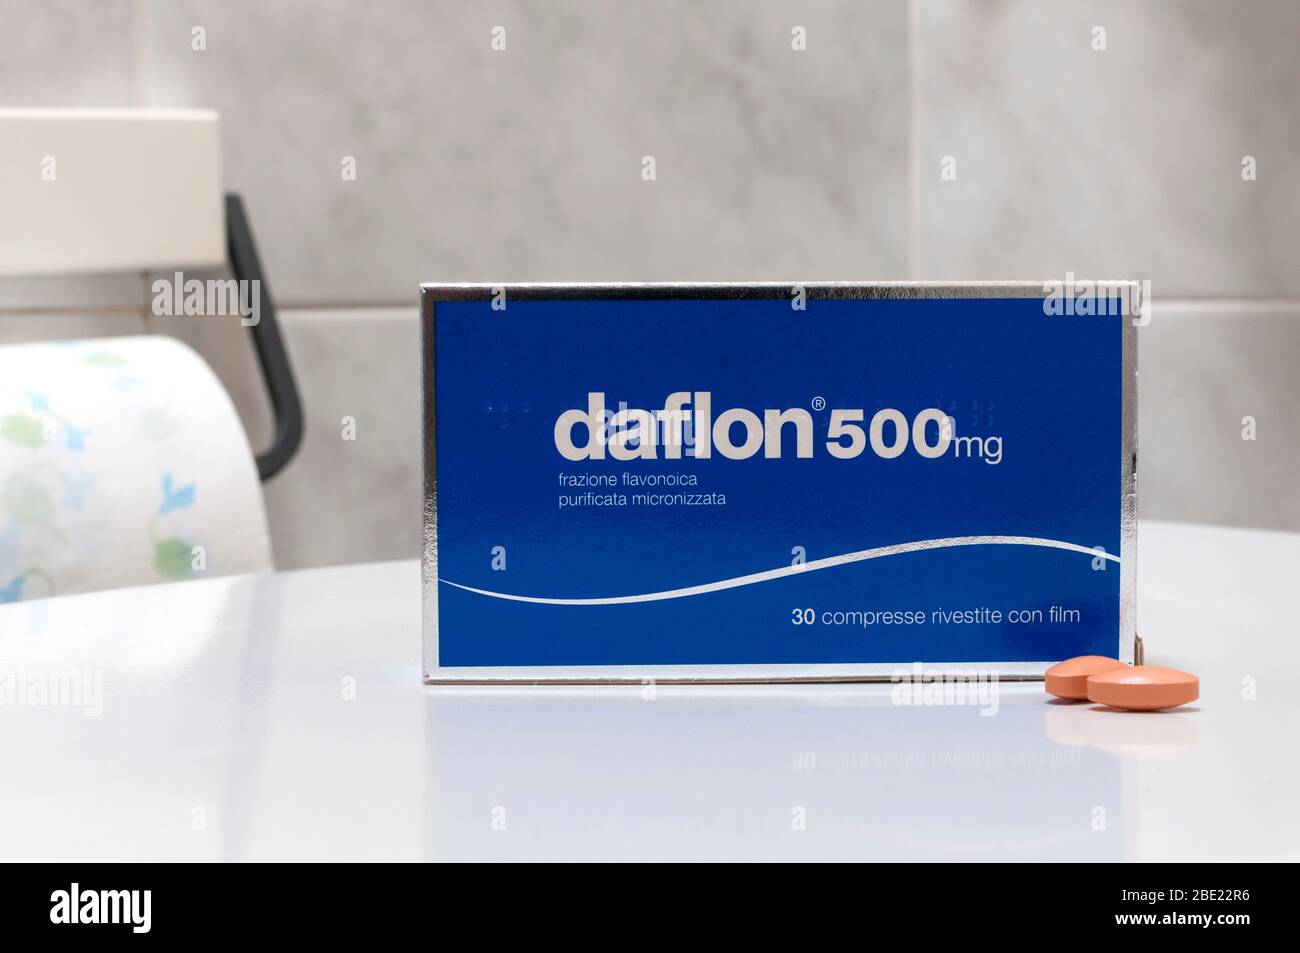 Carrara, Italia - 11 de abril de 2020 - Caja de pastillas recubiertas de Daflon, un medicamento utilizado para tratar hemorrhoids y síntomas atribuibles a la insuficiencia venosa Foto de stock